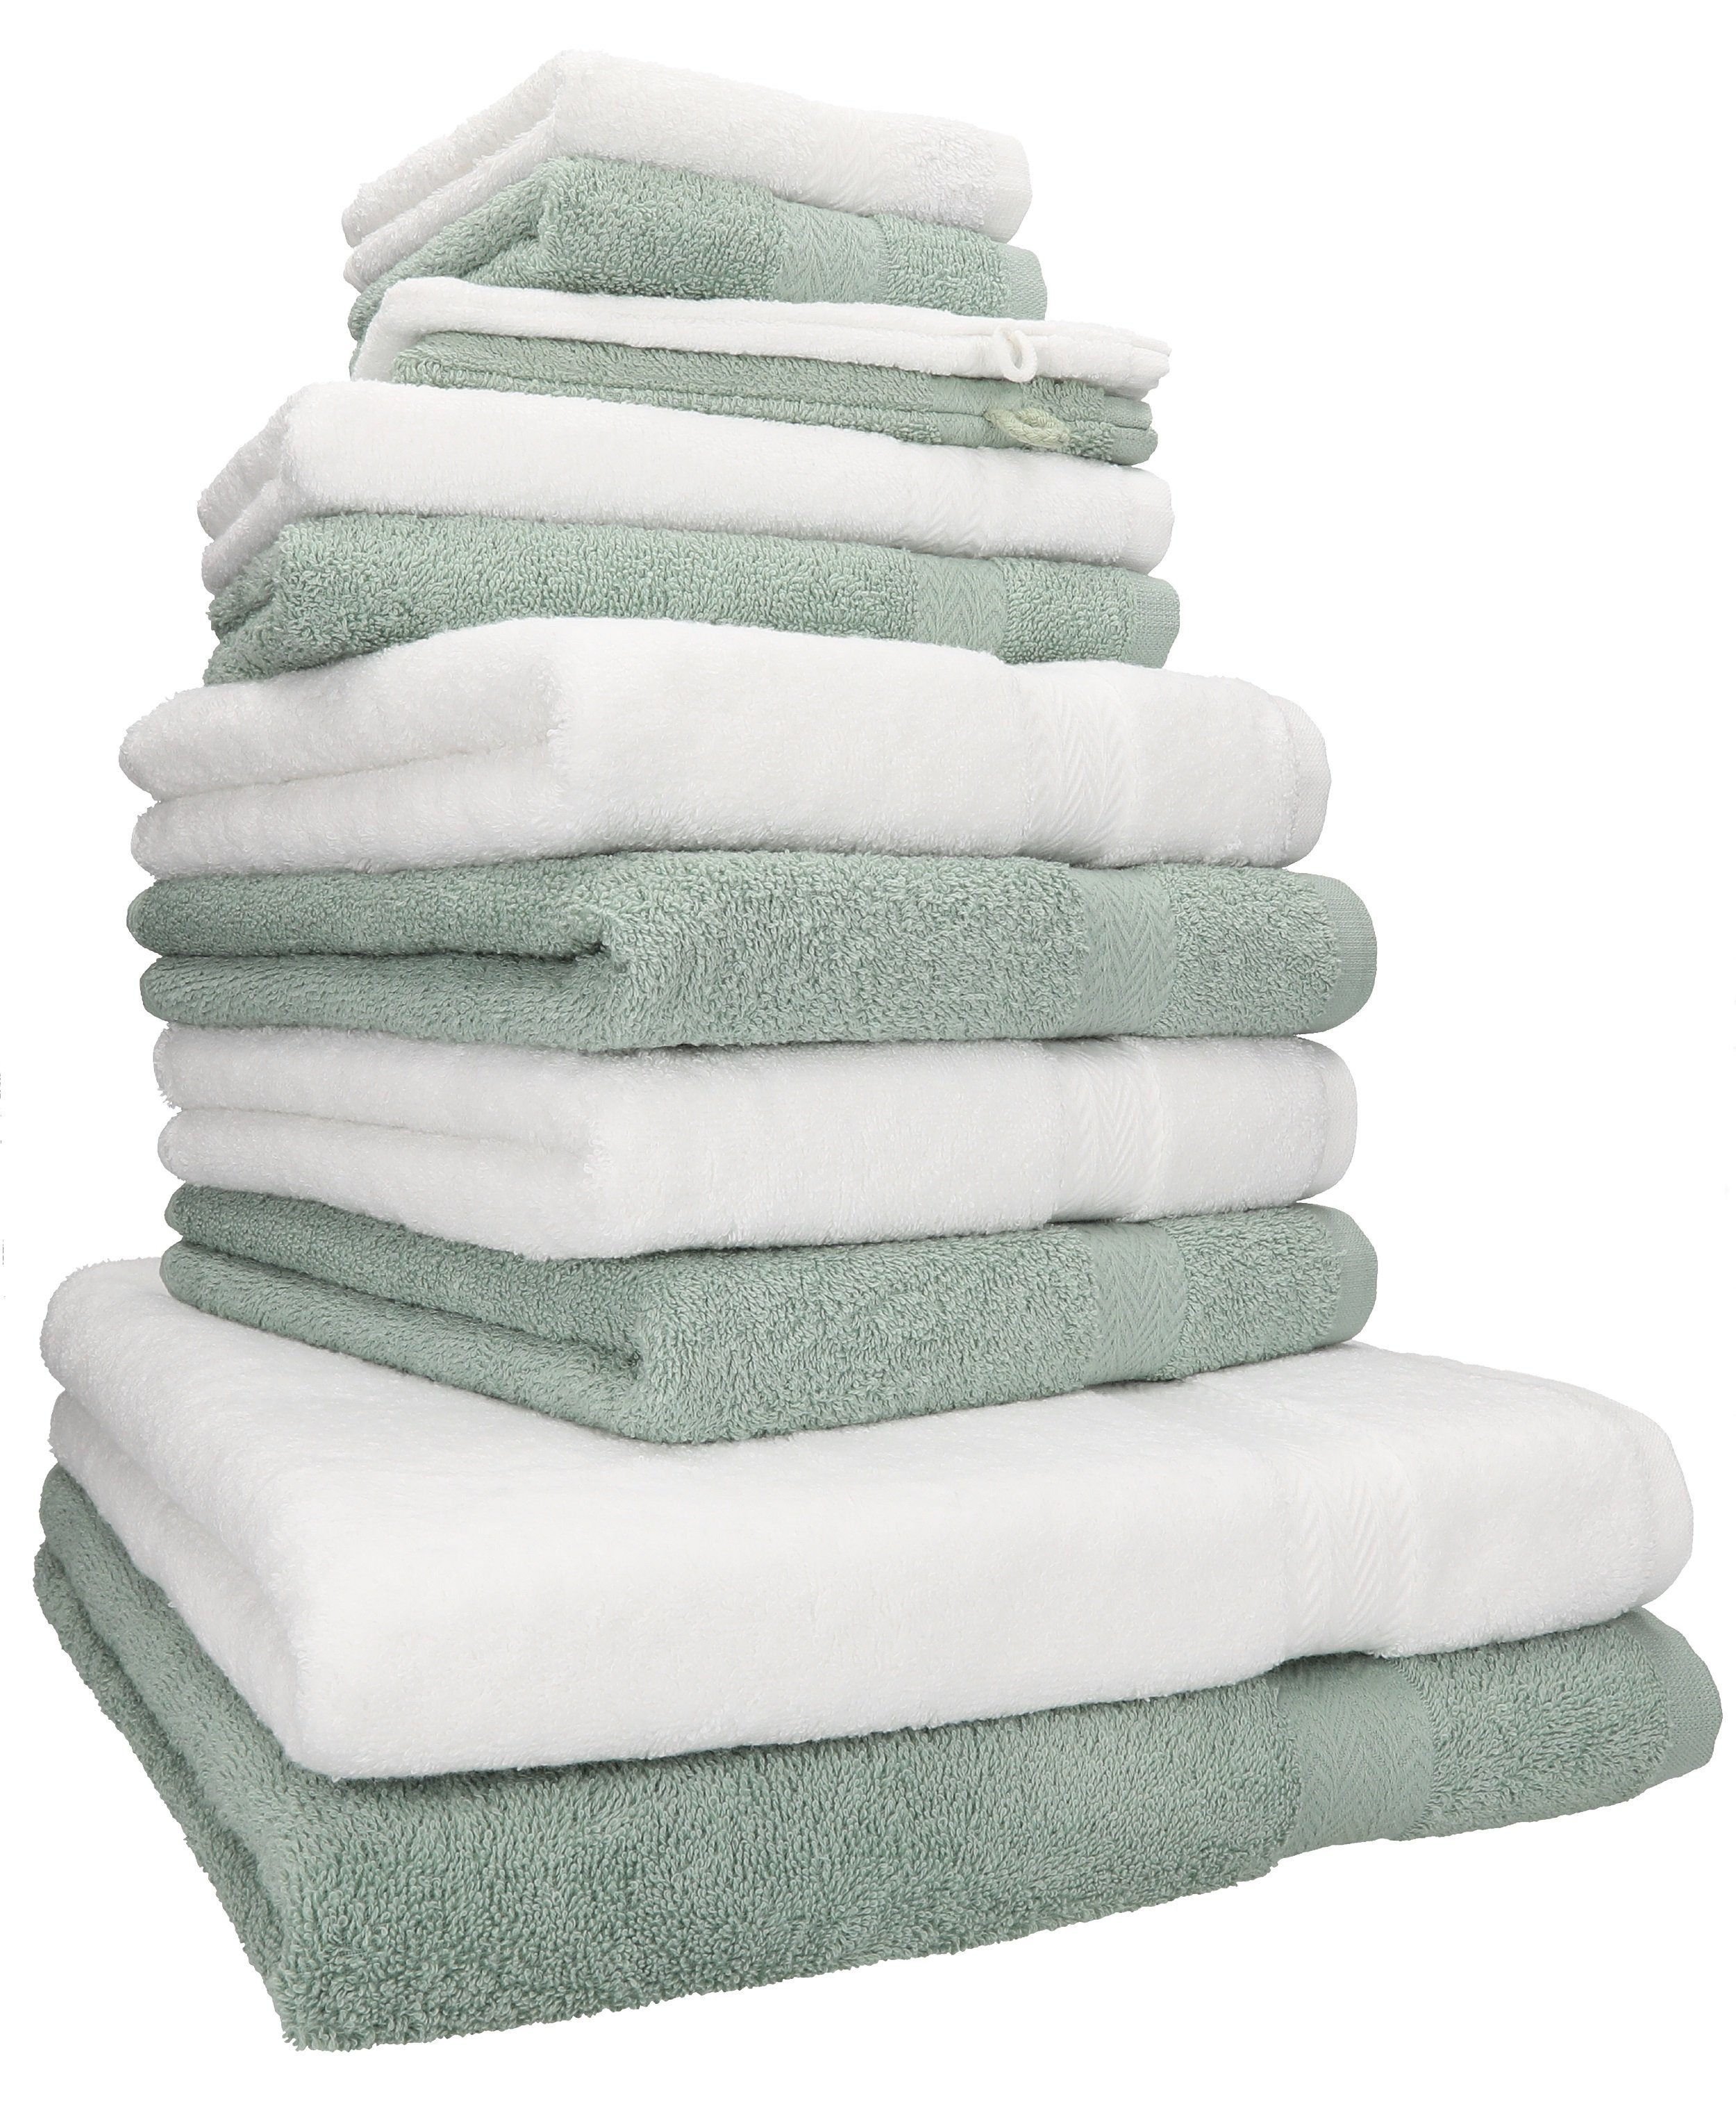 Betz Handtuch Set 12-TLG. Handtuch weiß/heugrün, Premium (12-tlg) Set Baumwolle, Farbe 100